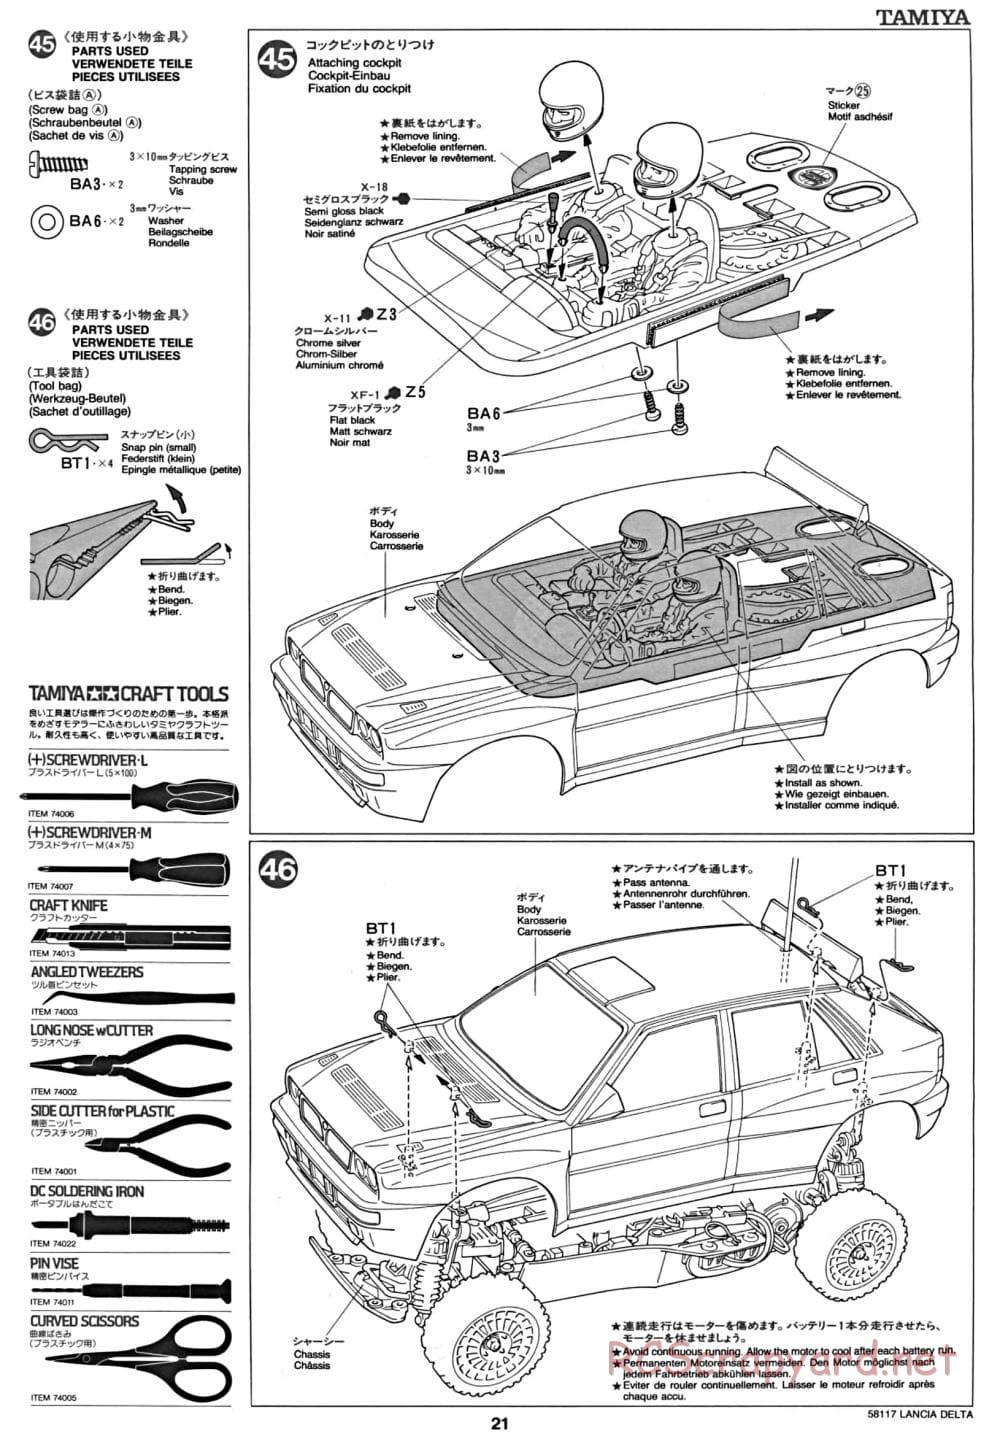 Tamiya - Lancia Delta HF Integrale - TA-01 Chassis - Manual - Page 22